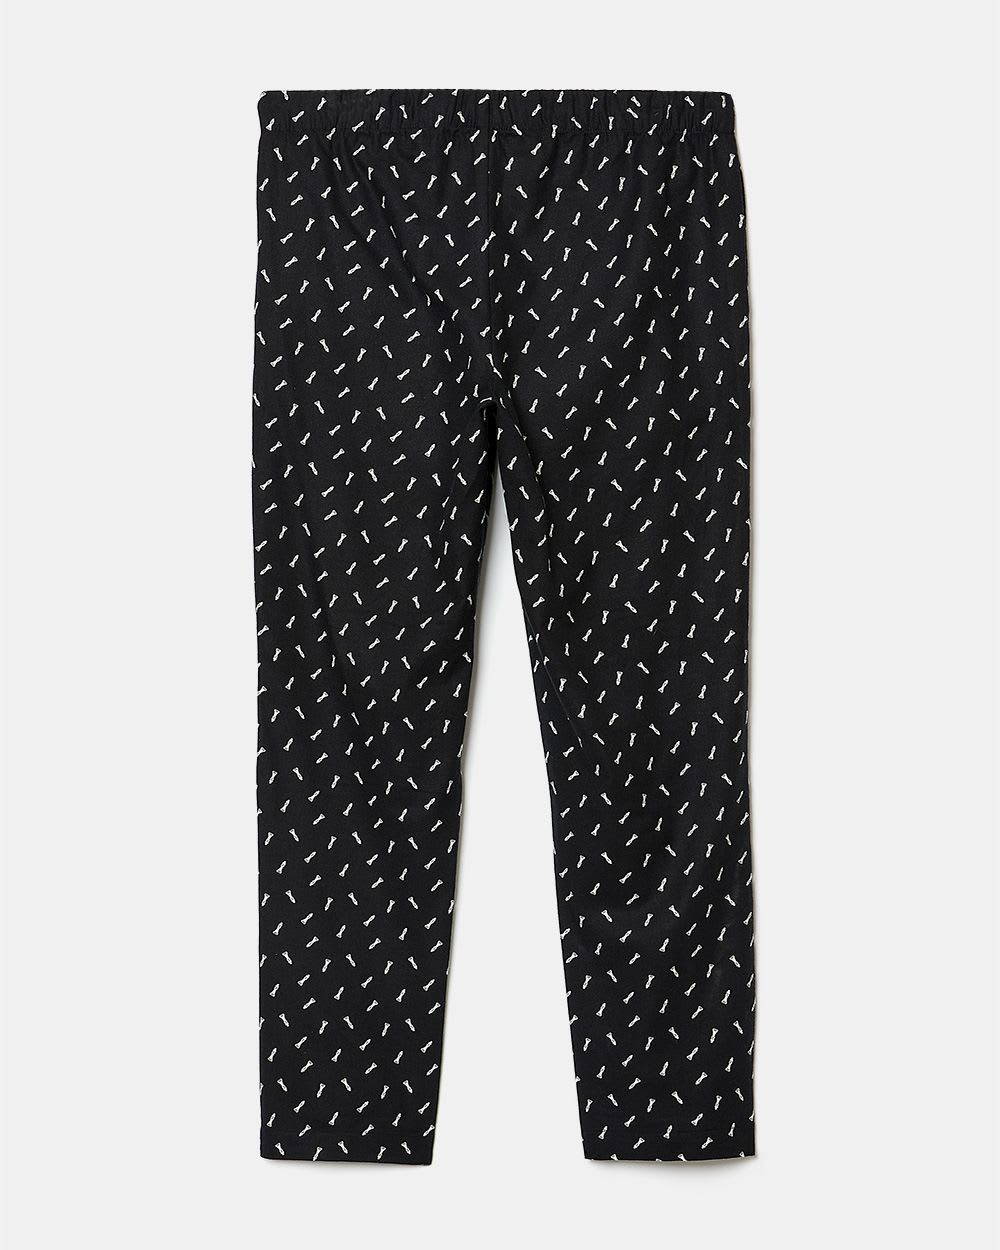 Woven Pajama Pant - 31"